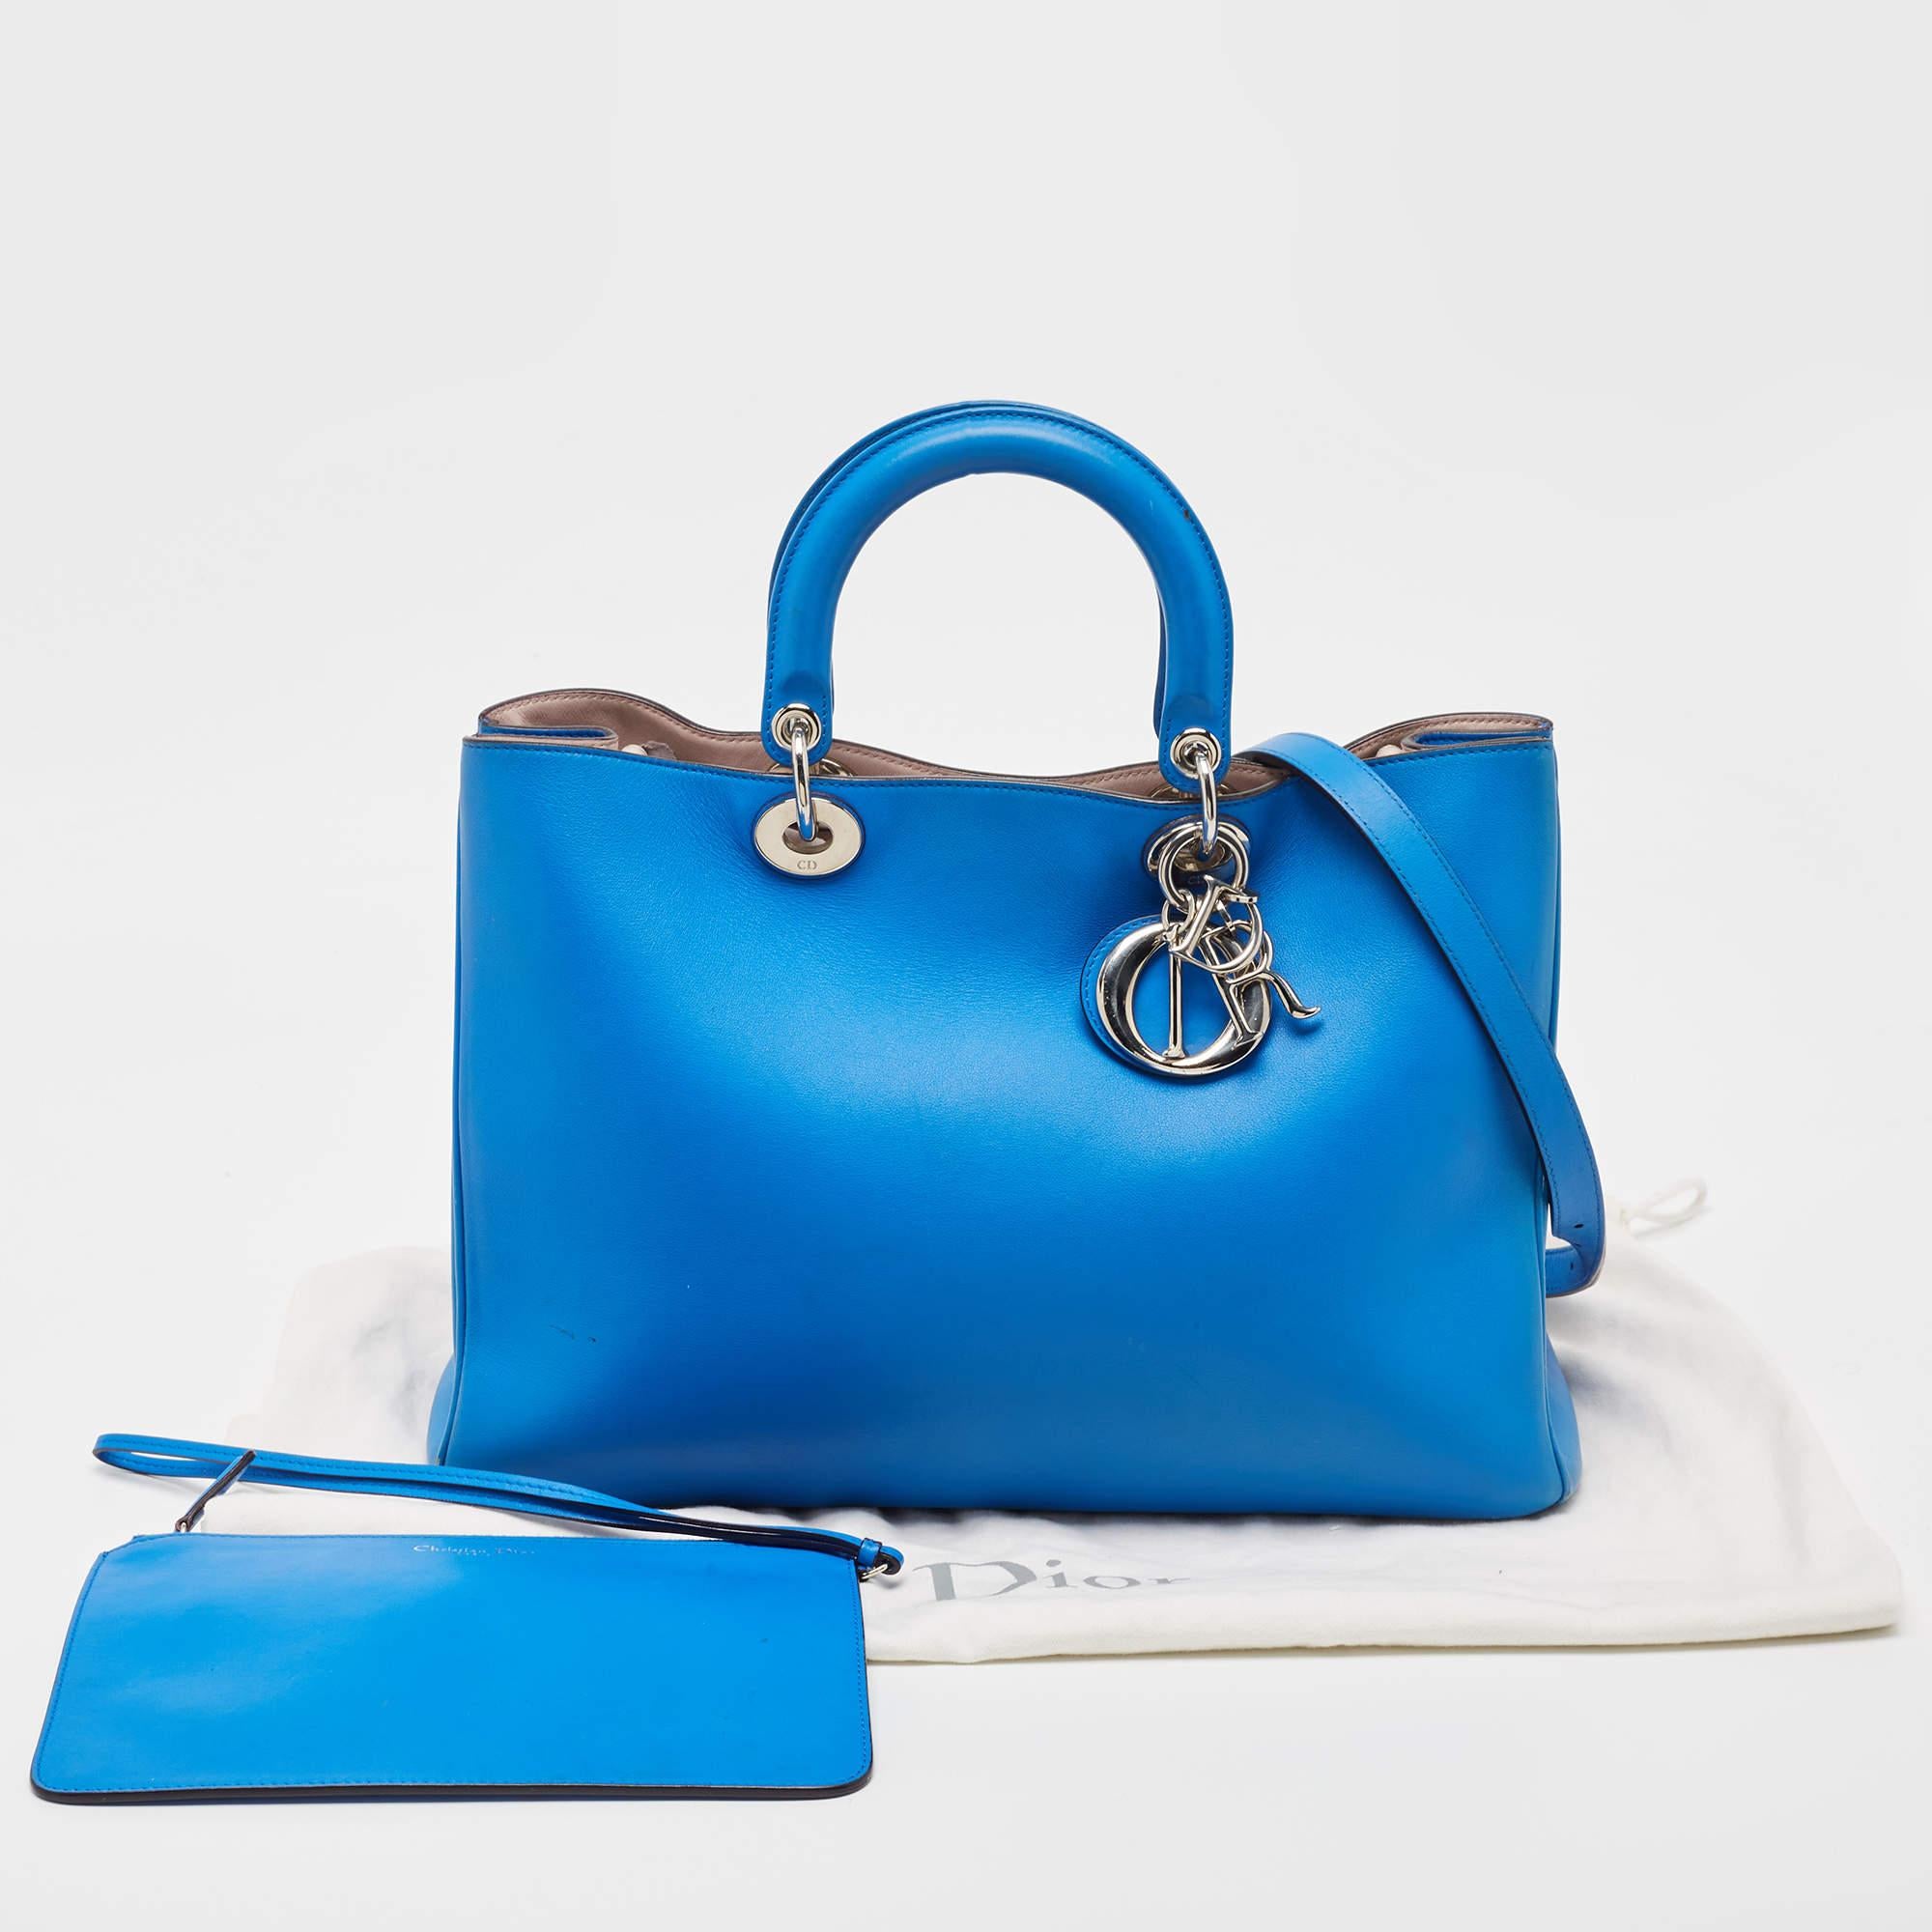 Dior Blue Leather Large Diorissimo Shopper Tote In Fair Condition For Sale In Dubai, Al Qouz 2